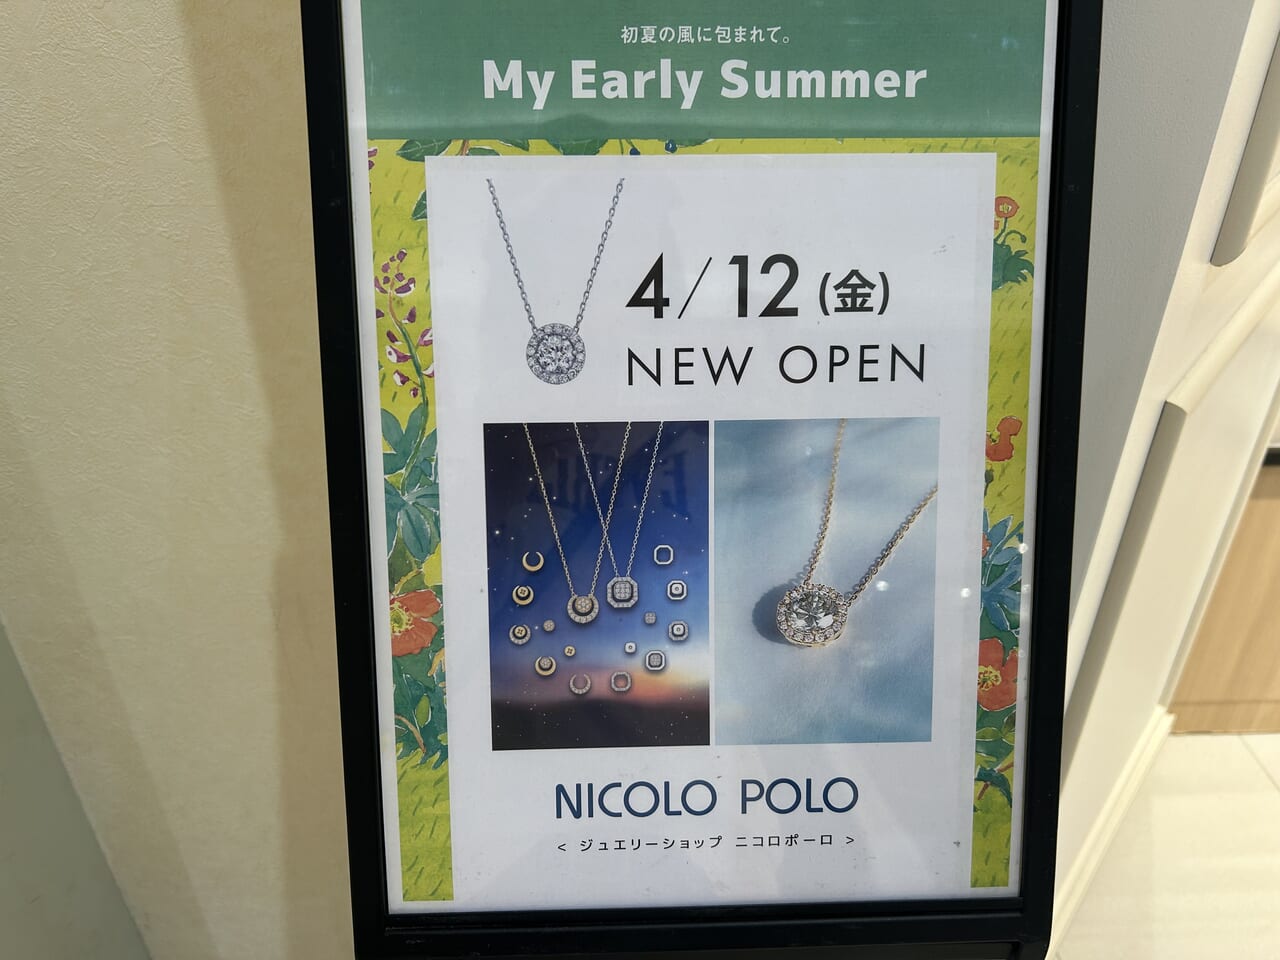 NICOLO POLOオープンのお知らせ